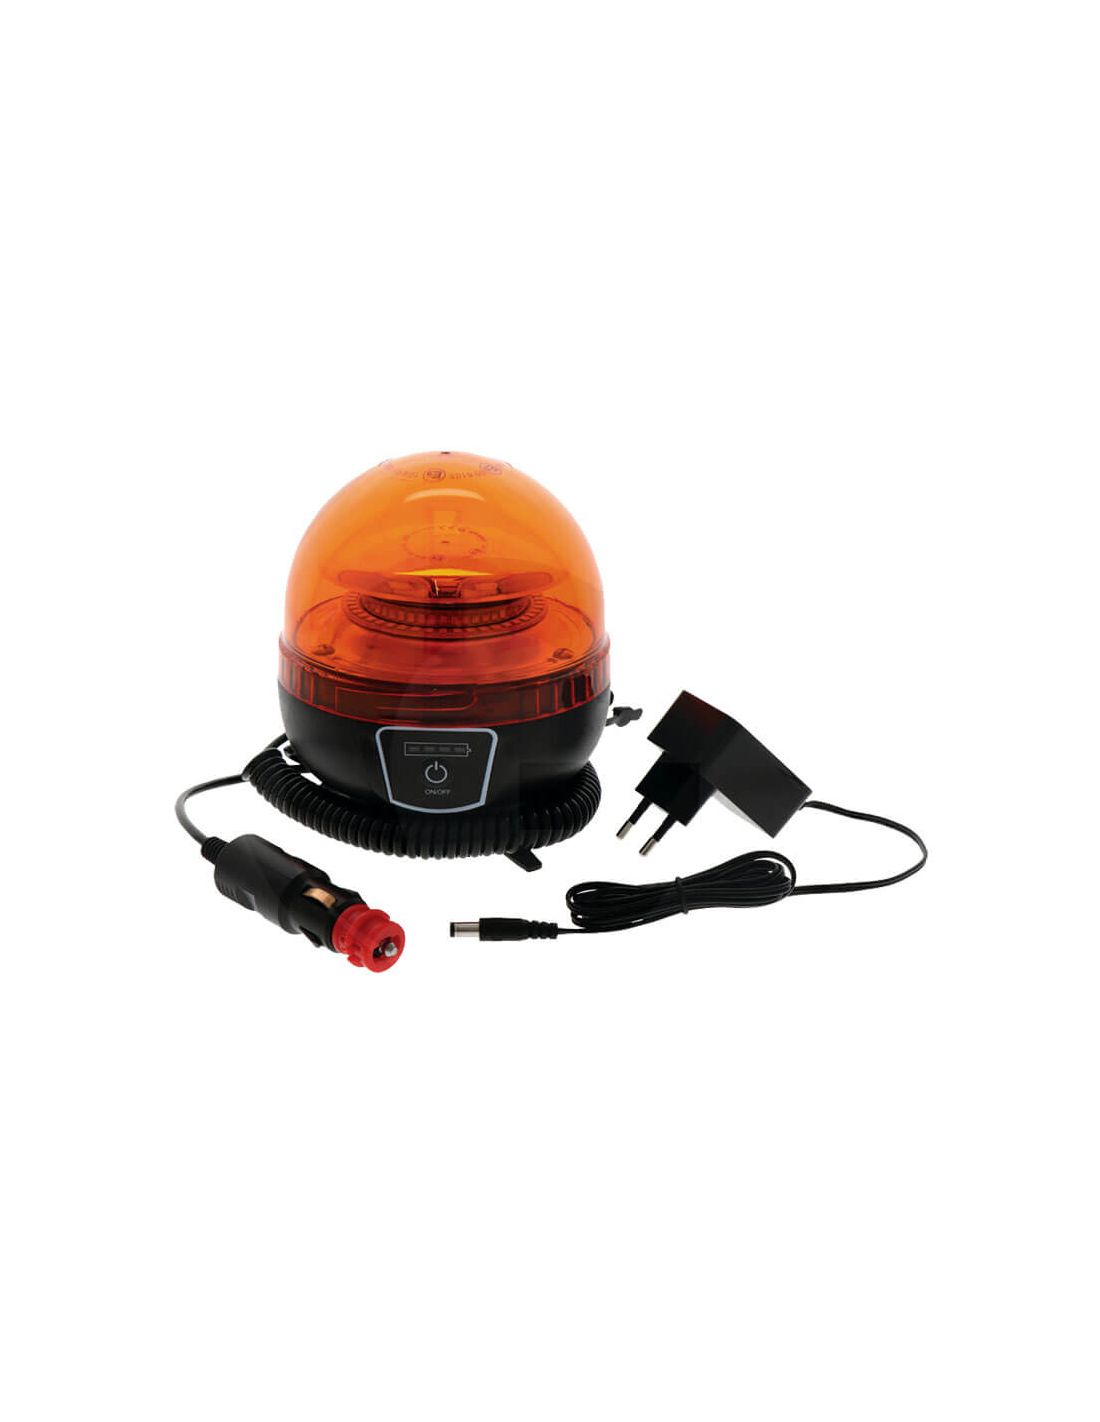 Gyrophare led orange autonome et magnétique rechargeable sans fil